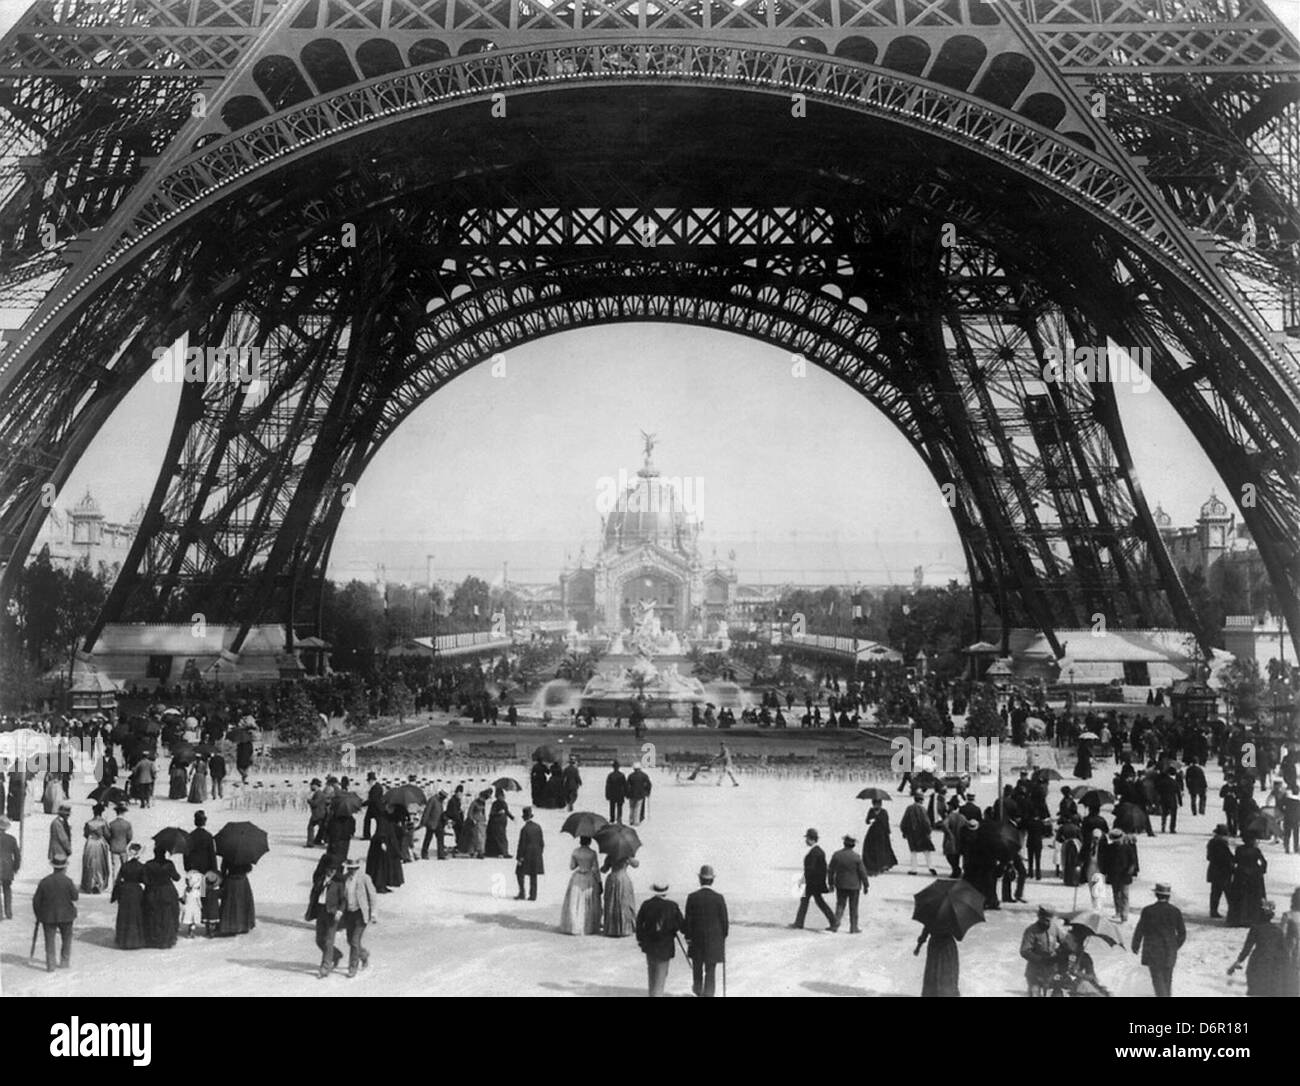 Exposition de Paris, vue du sol au niveau de la Tour Eiffel avec parisiens promenading, 1889 Banque D'Images